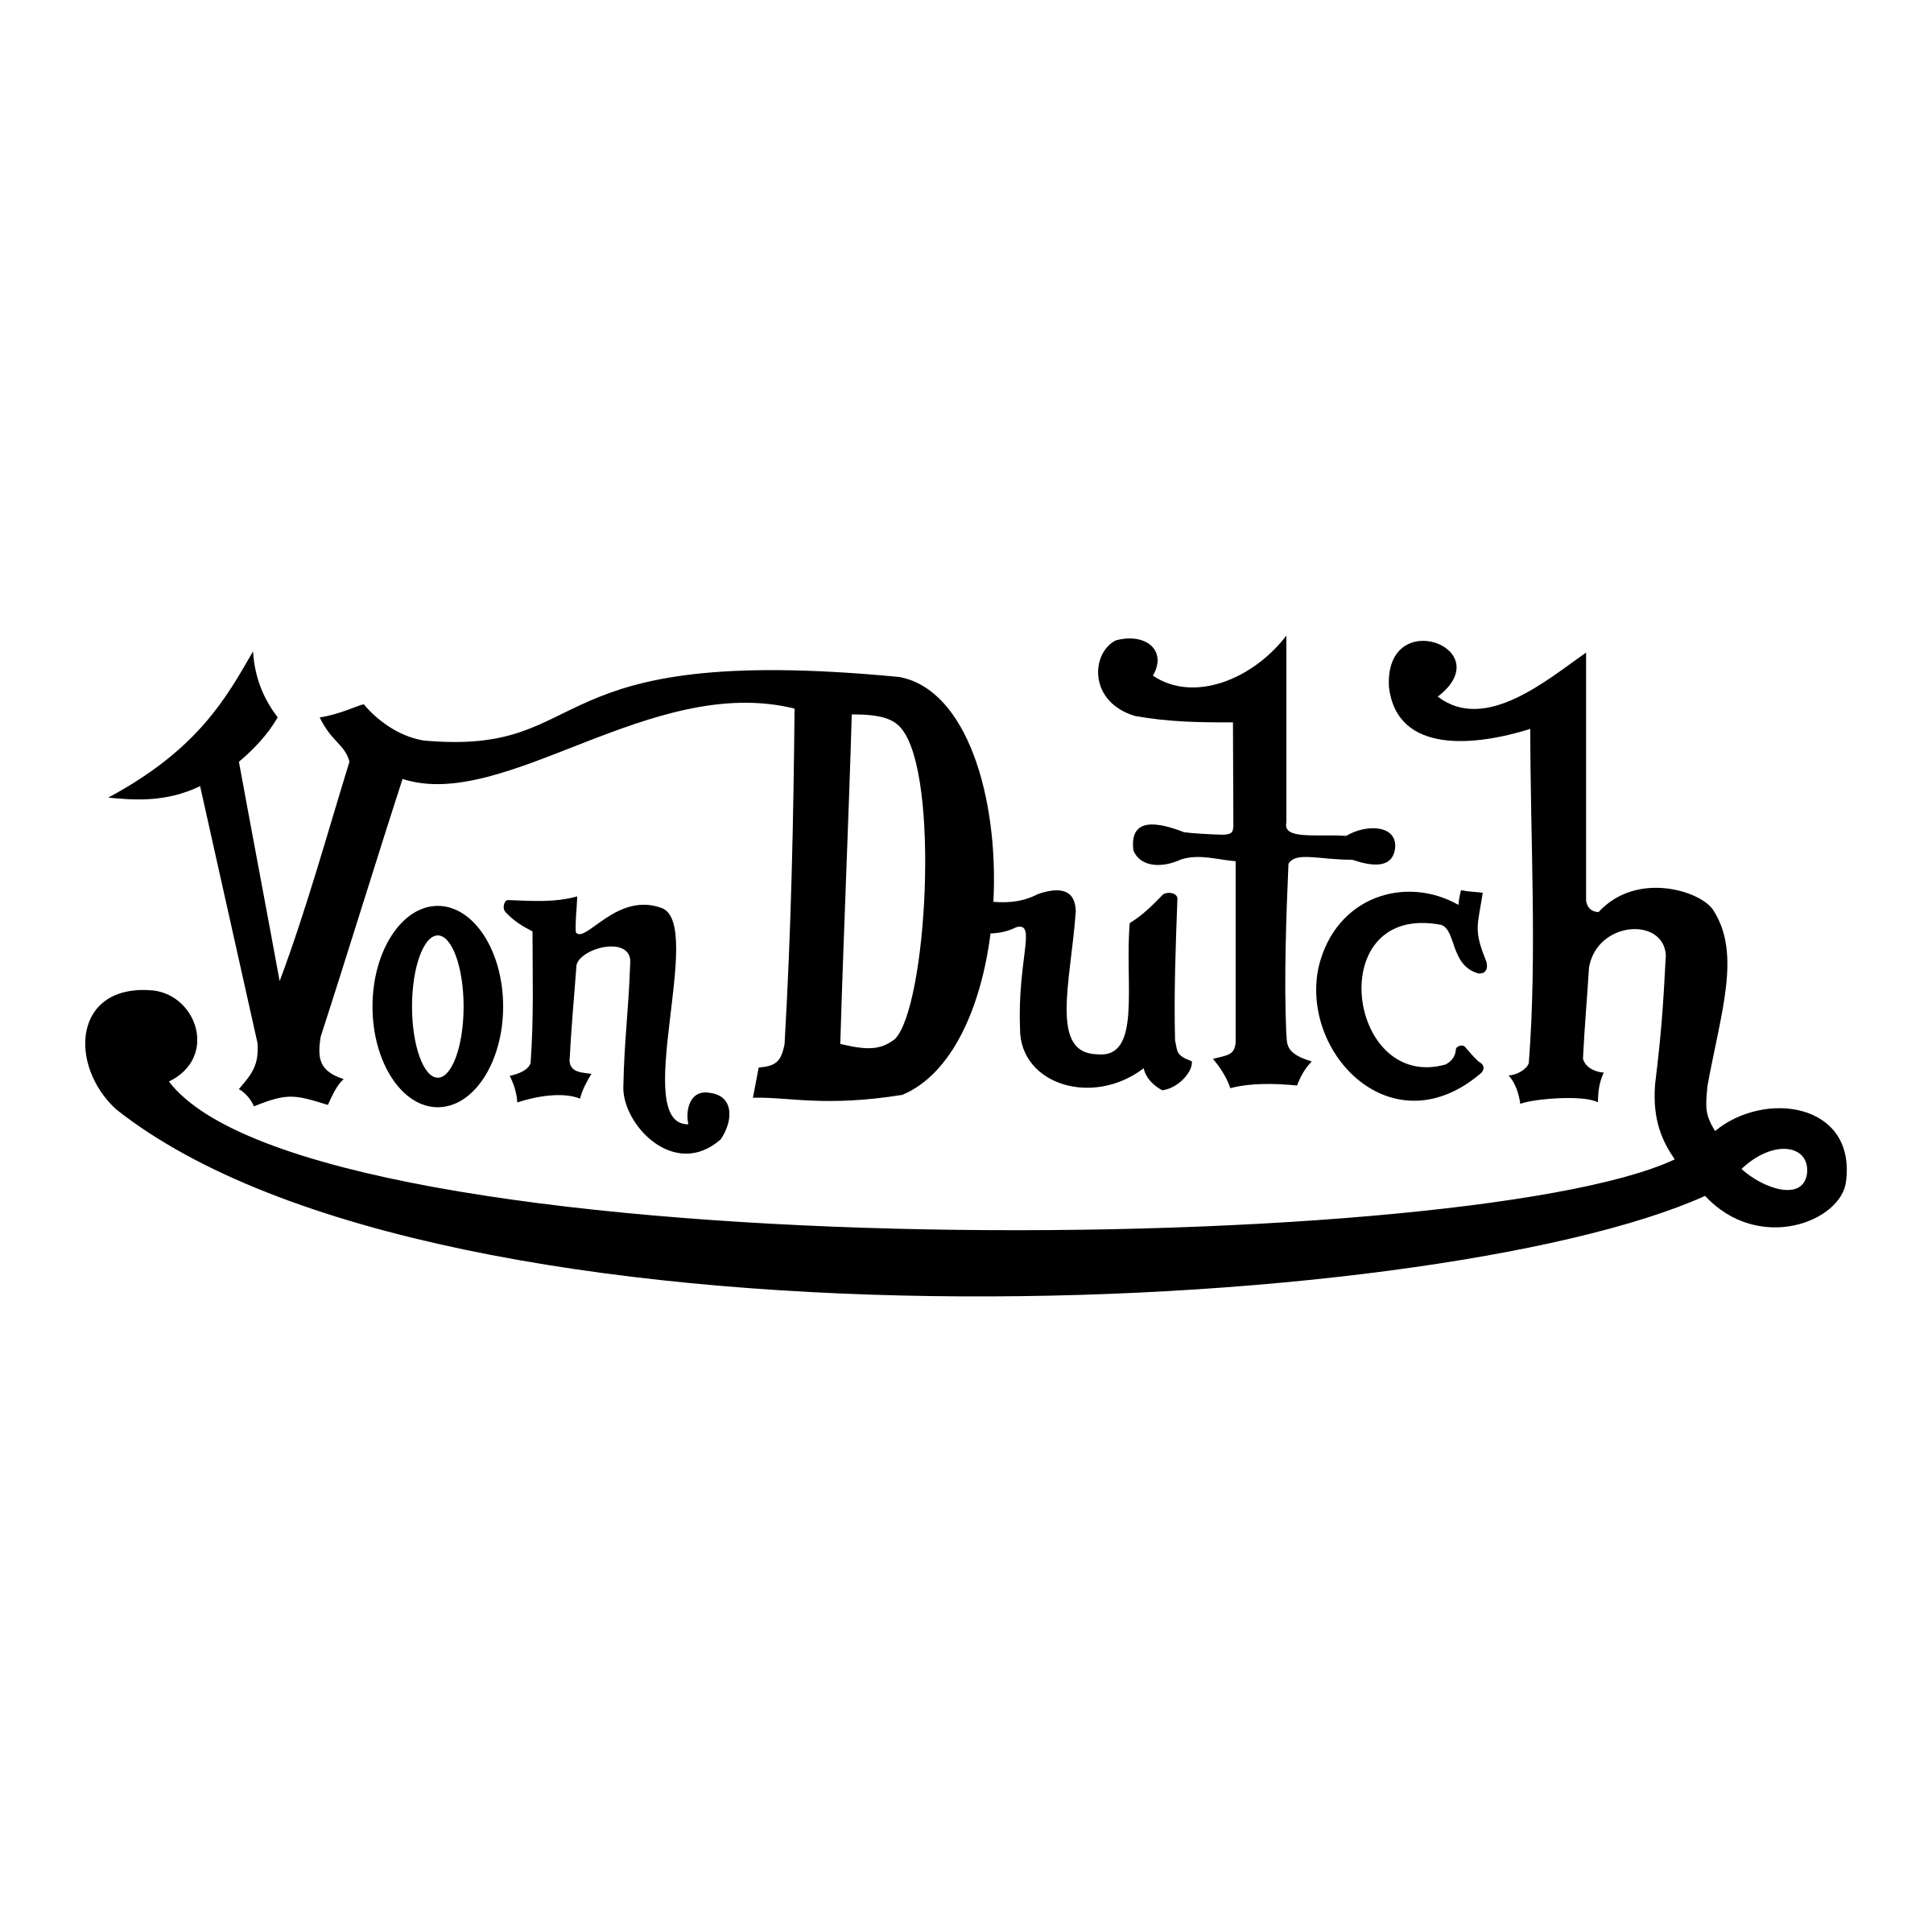 Dutch Logo - Von Dutch Logo PNG Transparent & SVG Vector - Freebie Supply